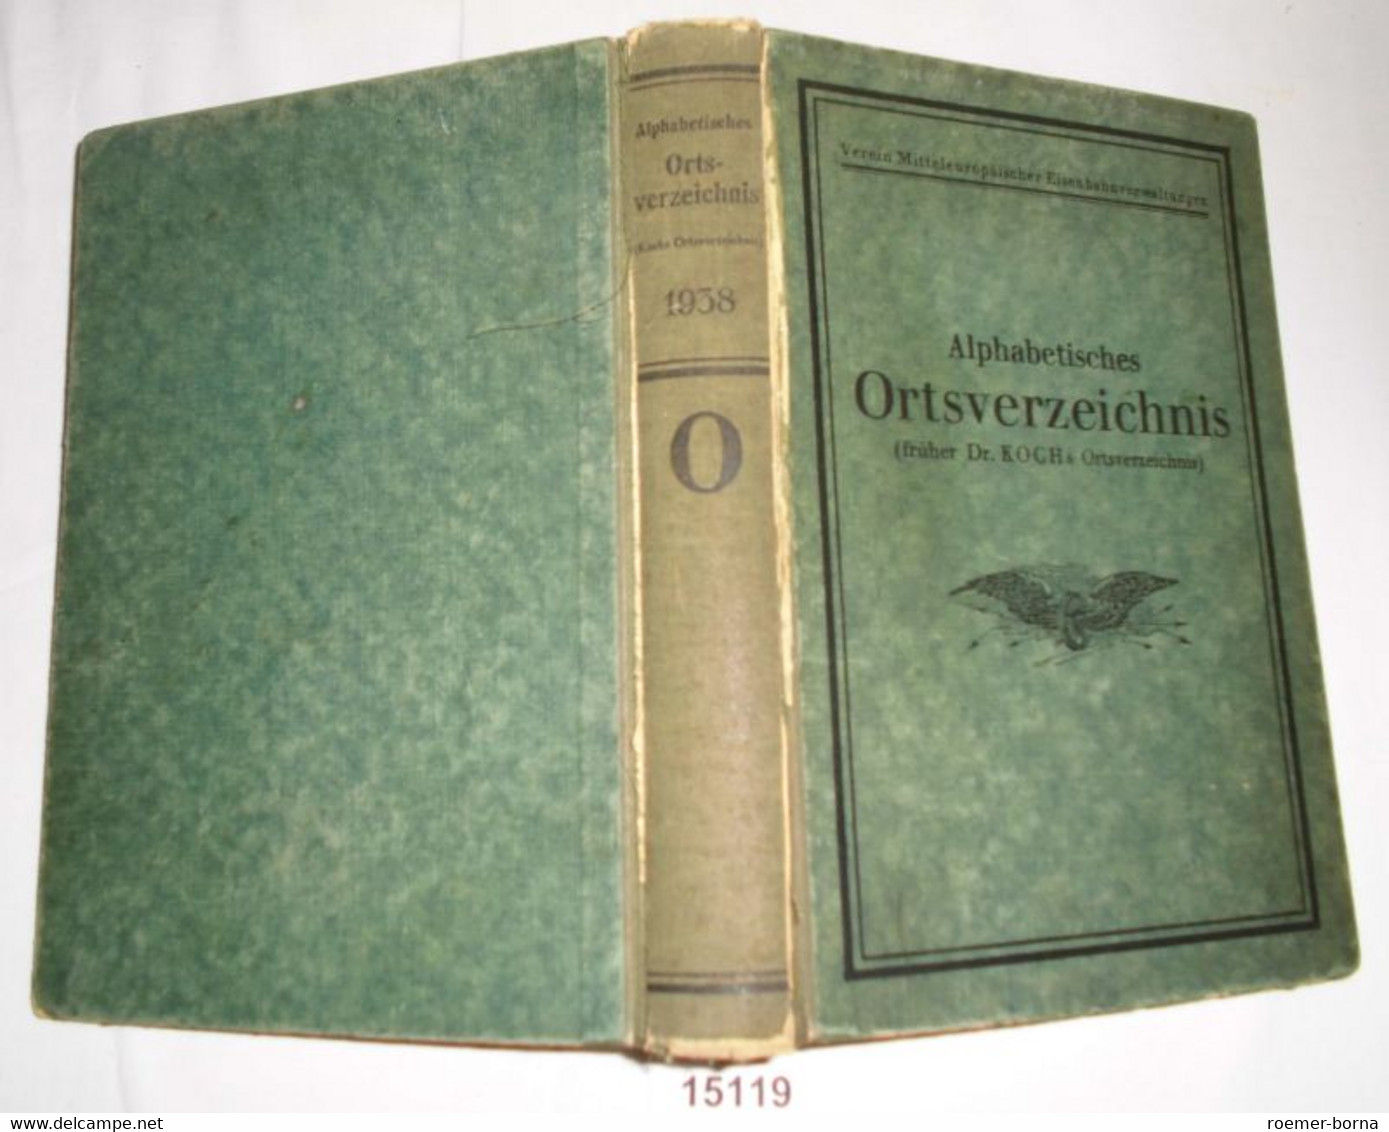 Alphabetisches Ortsverzeichnis (früher Dr. Koch's Orstverzeichnis) Ausgabe 1938, Verein Mitteleuropäischer Eisenbahnverw - Non Classificati